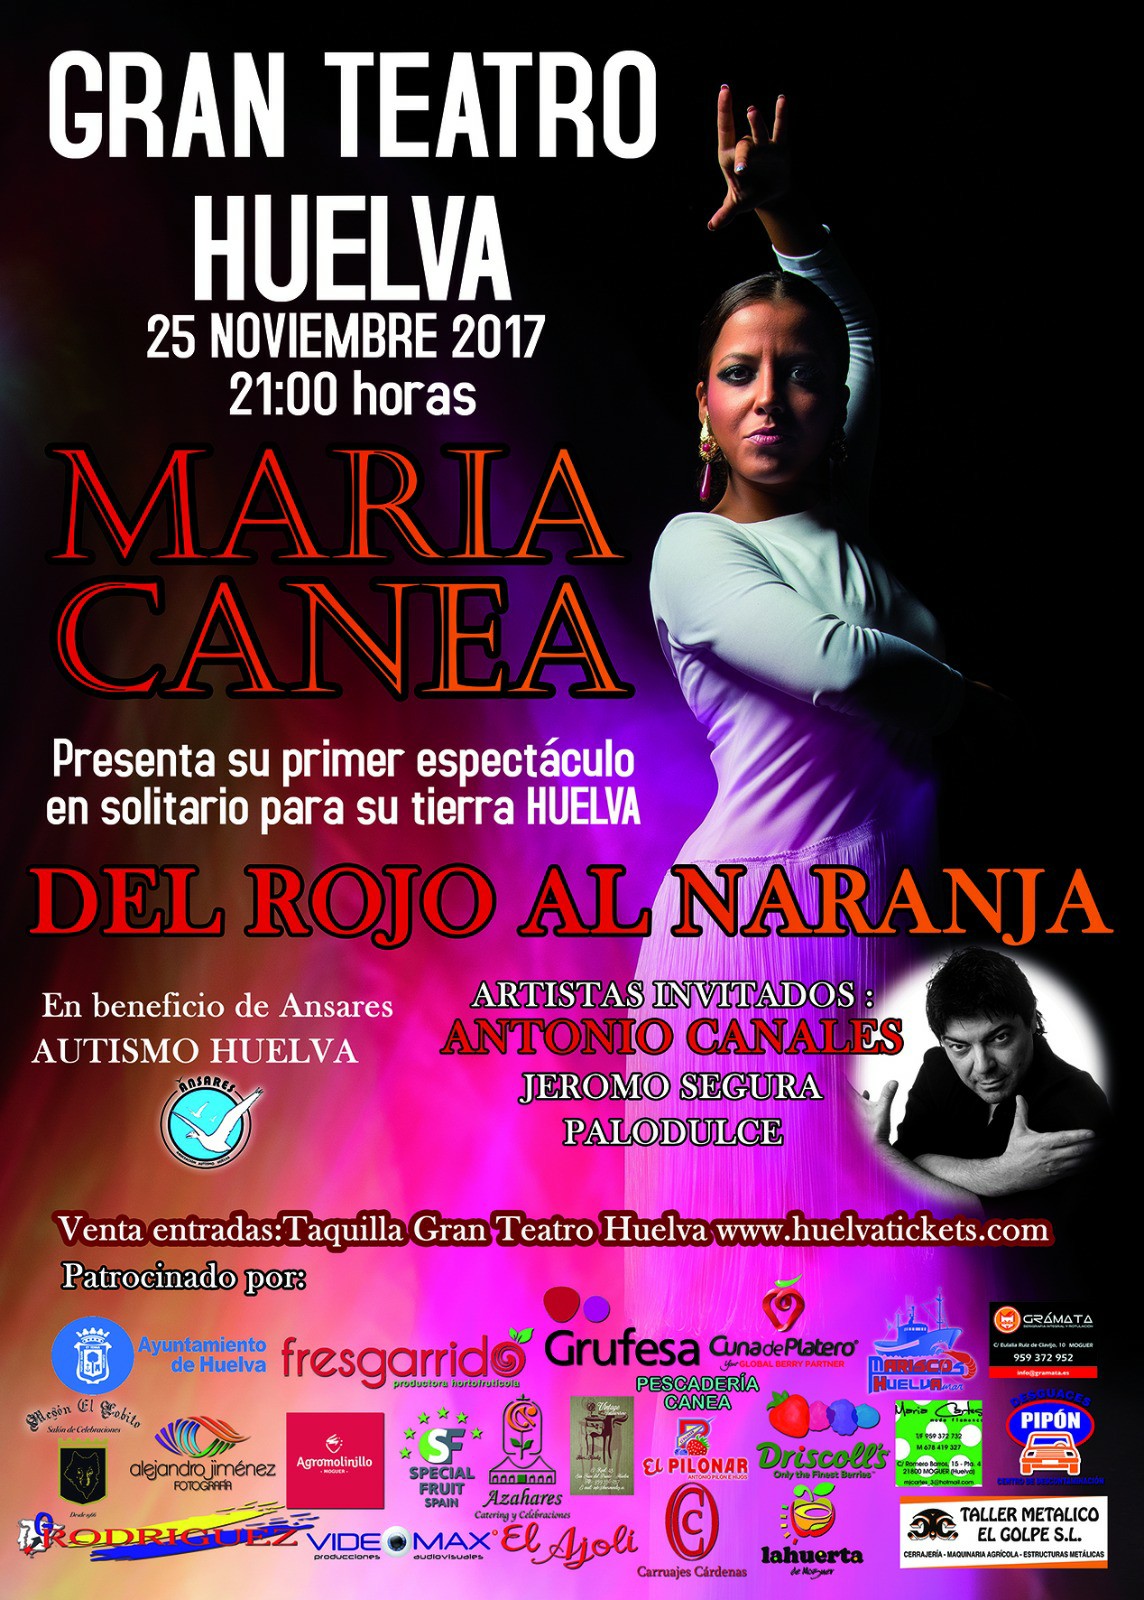 La bailaora María Canea visita Grufesa para promocionar e invitar a la plantilla a su concierto del 25 de noviembre a beneficio de Ánsares